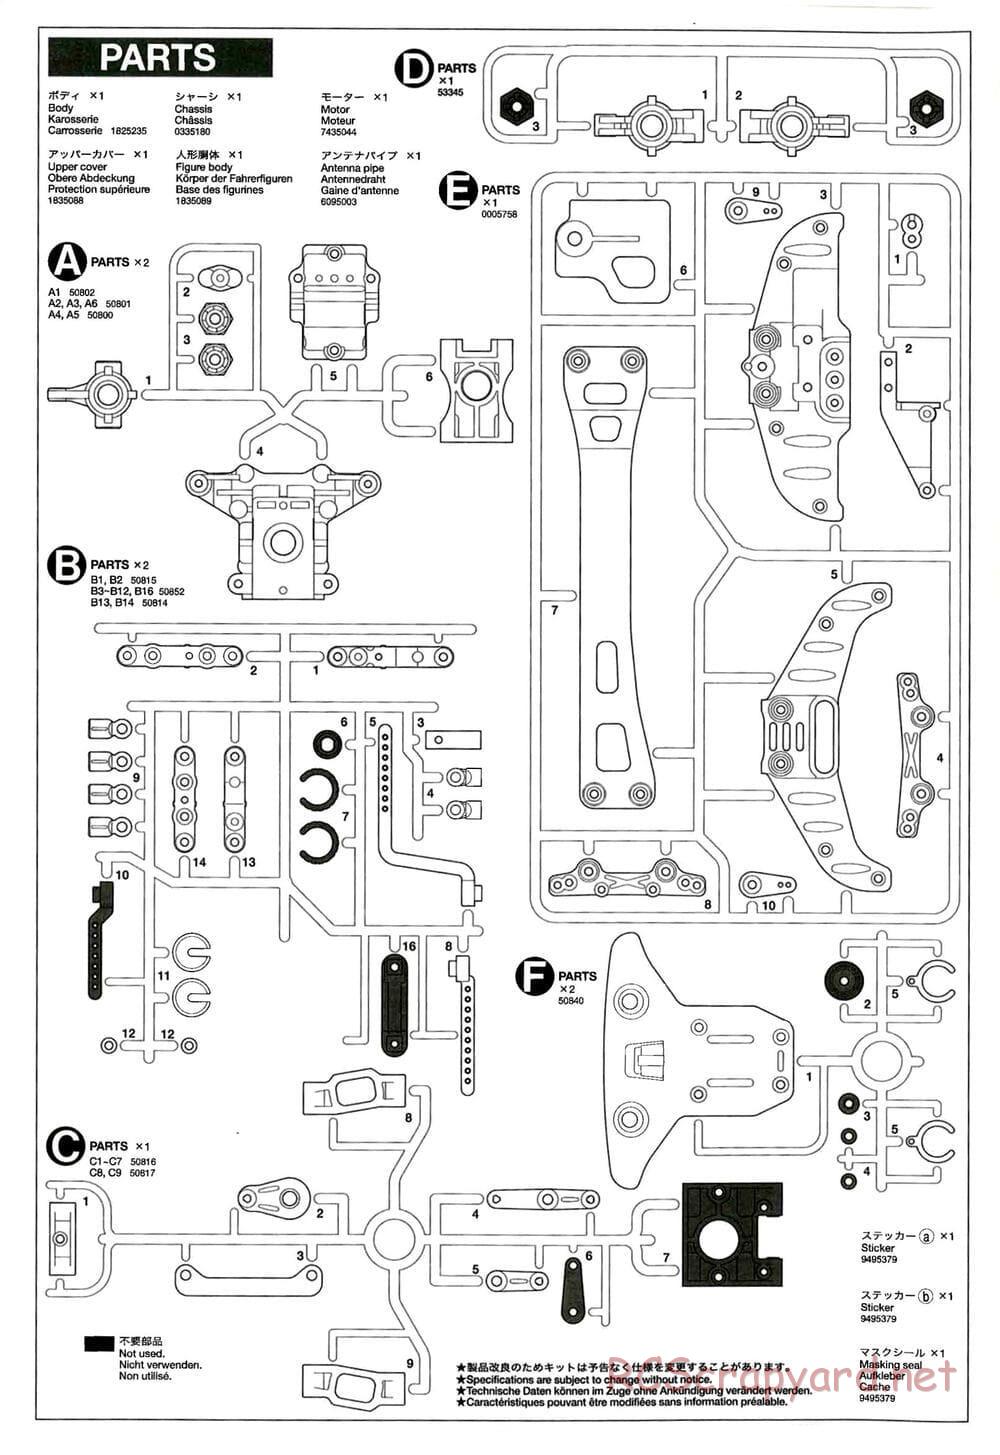 Tamiya - TB-01 Chassis - Manual - Page 16